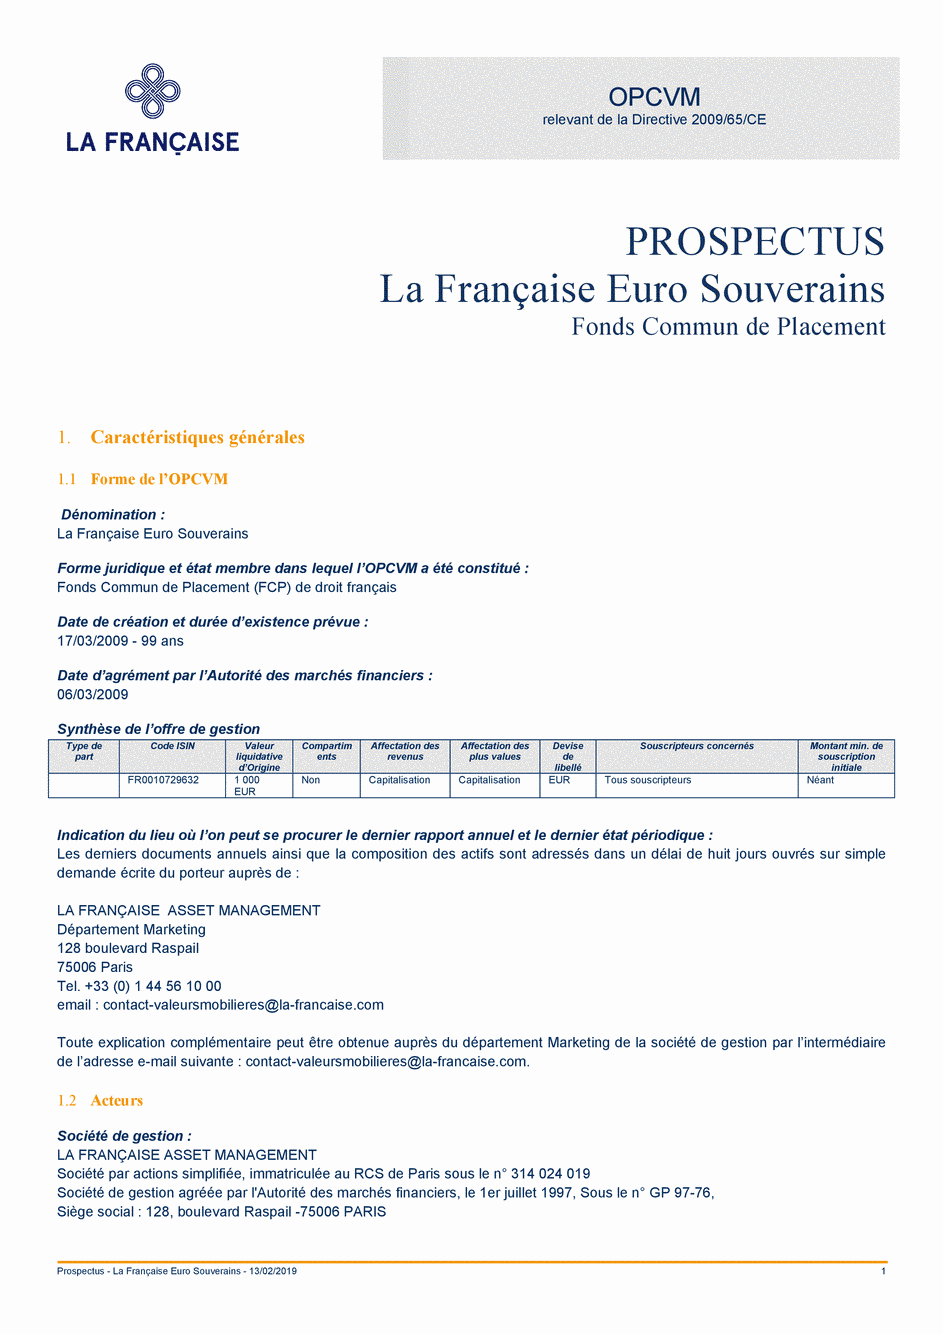 Prospectus La Française Euro Souverains - 13/02/2019 - Français